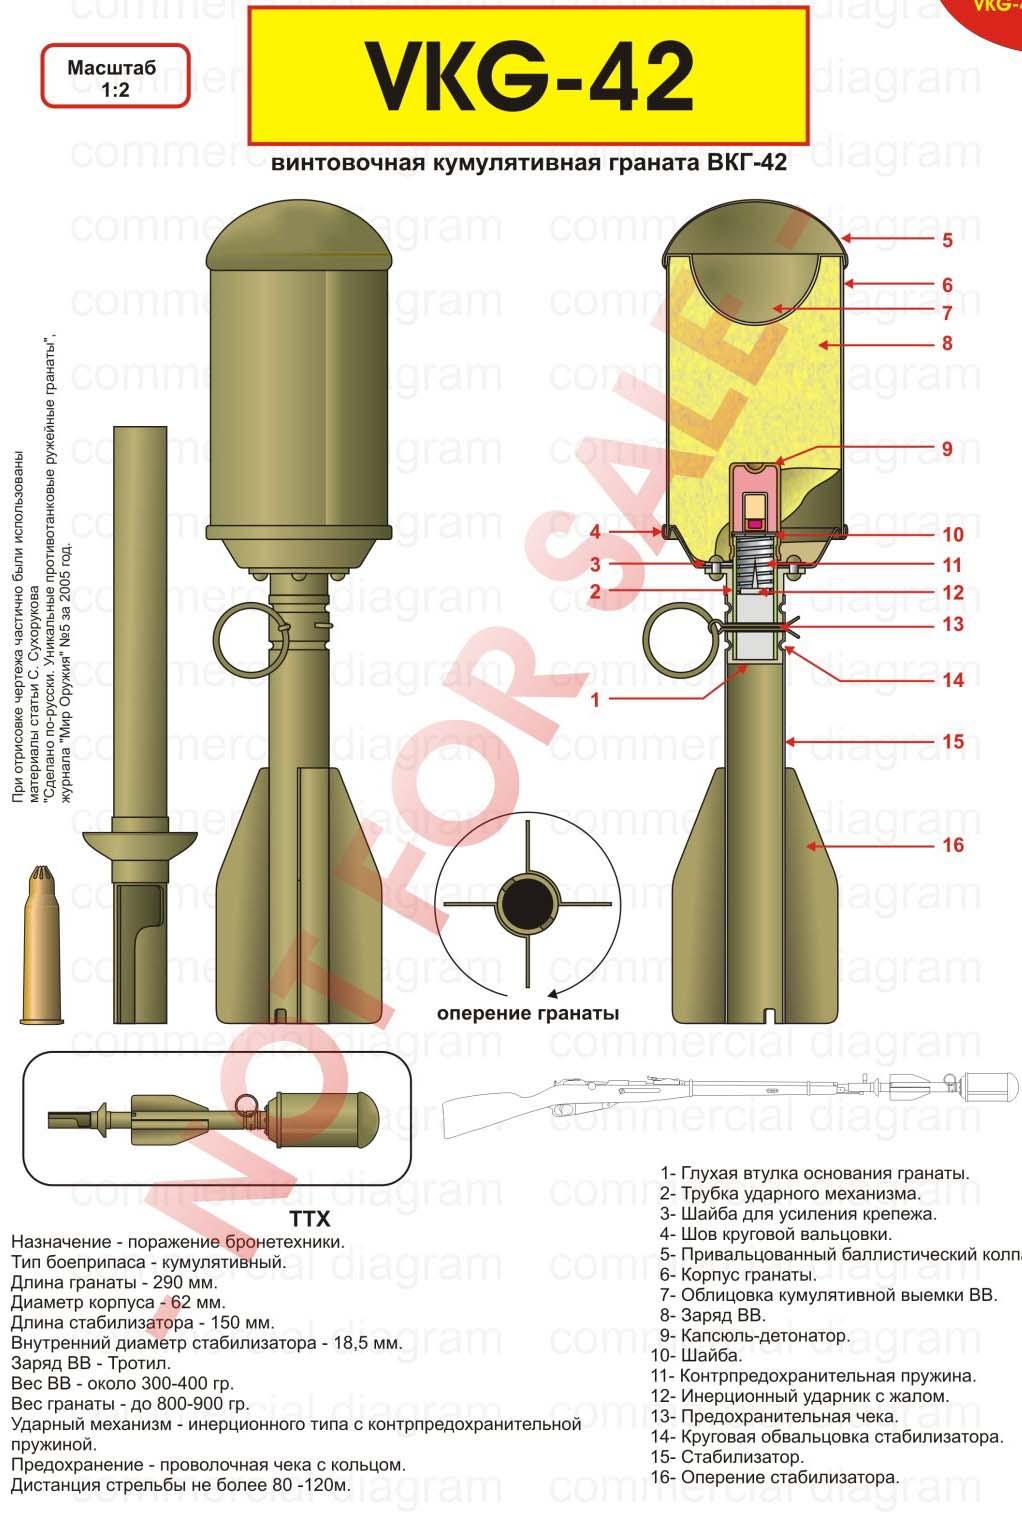 Rifle Grenade VPGS -41 (Ружейная шомпольная гран ата